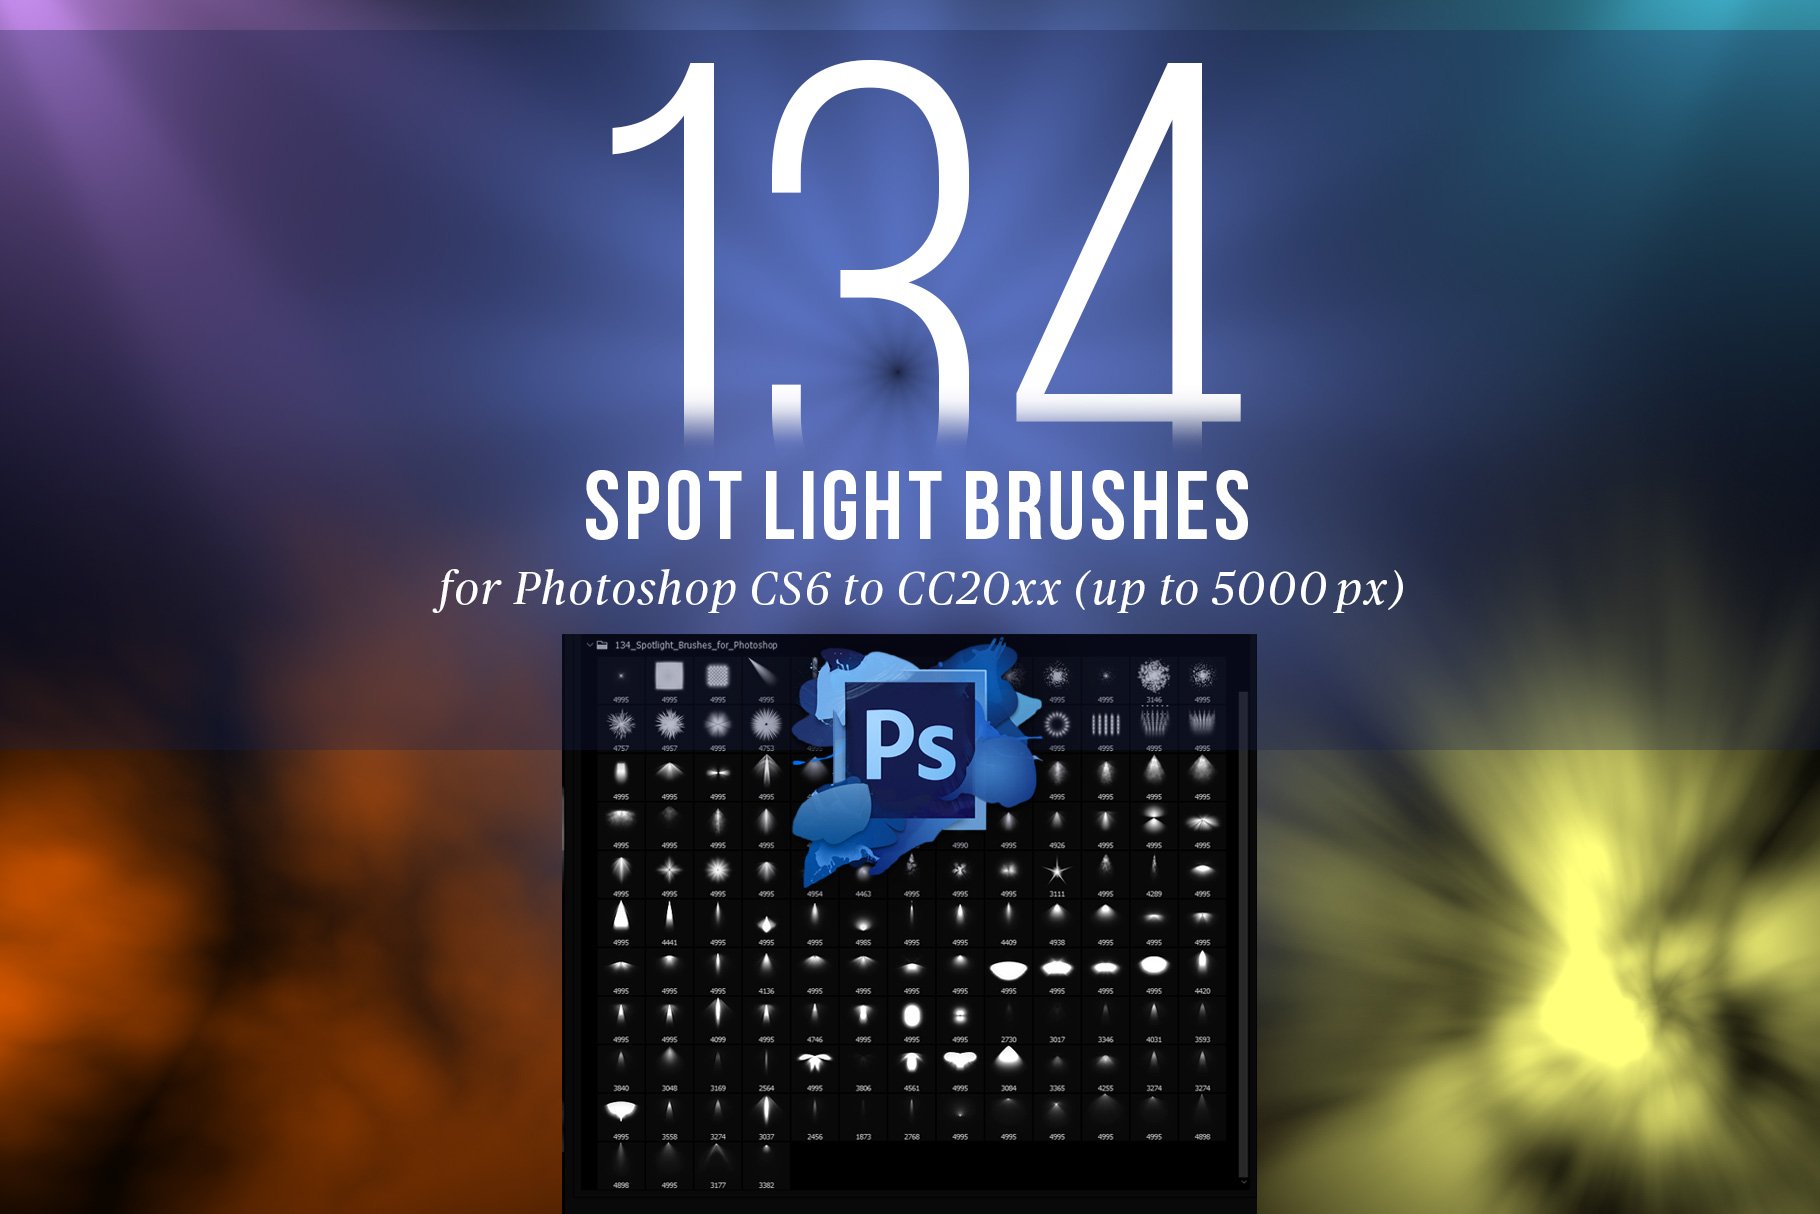 134 Spotlight Brushes for Photoshopcover image.